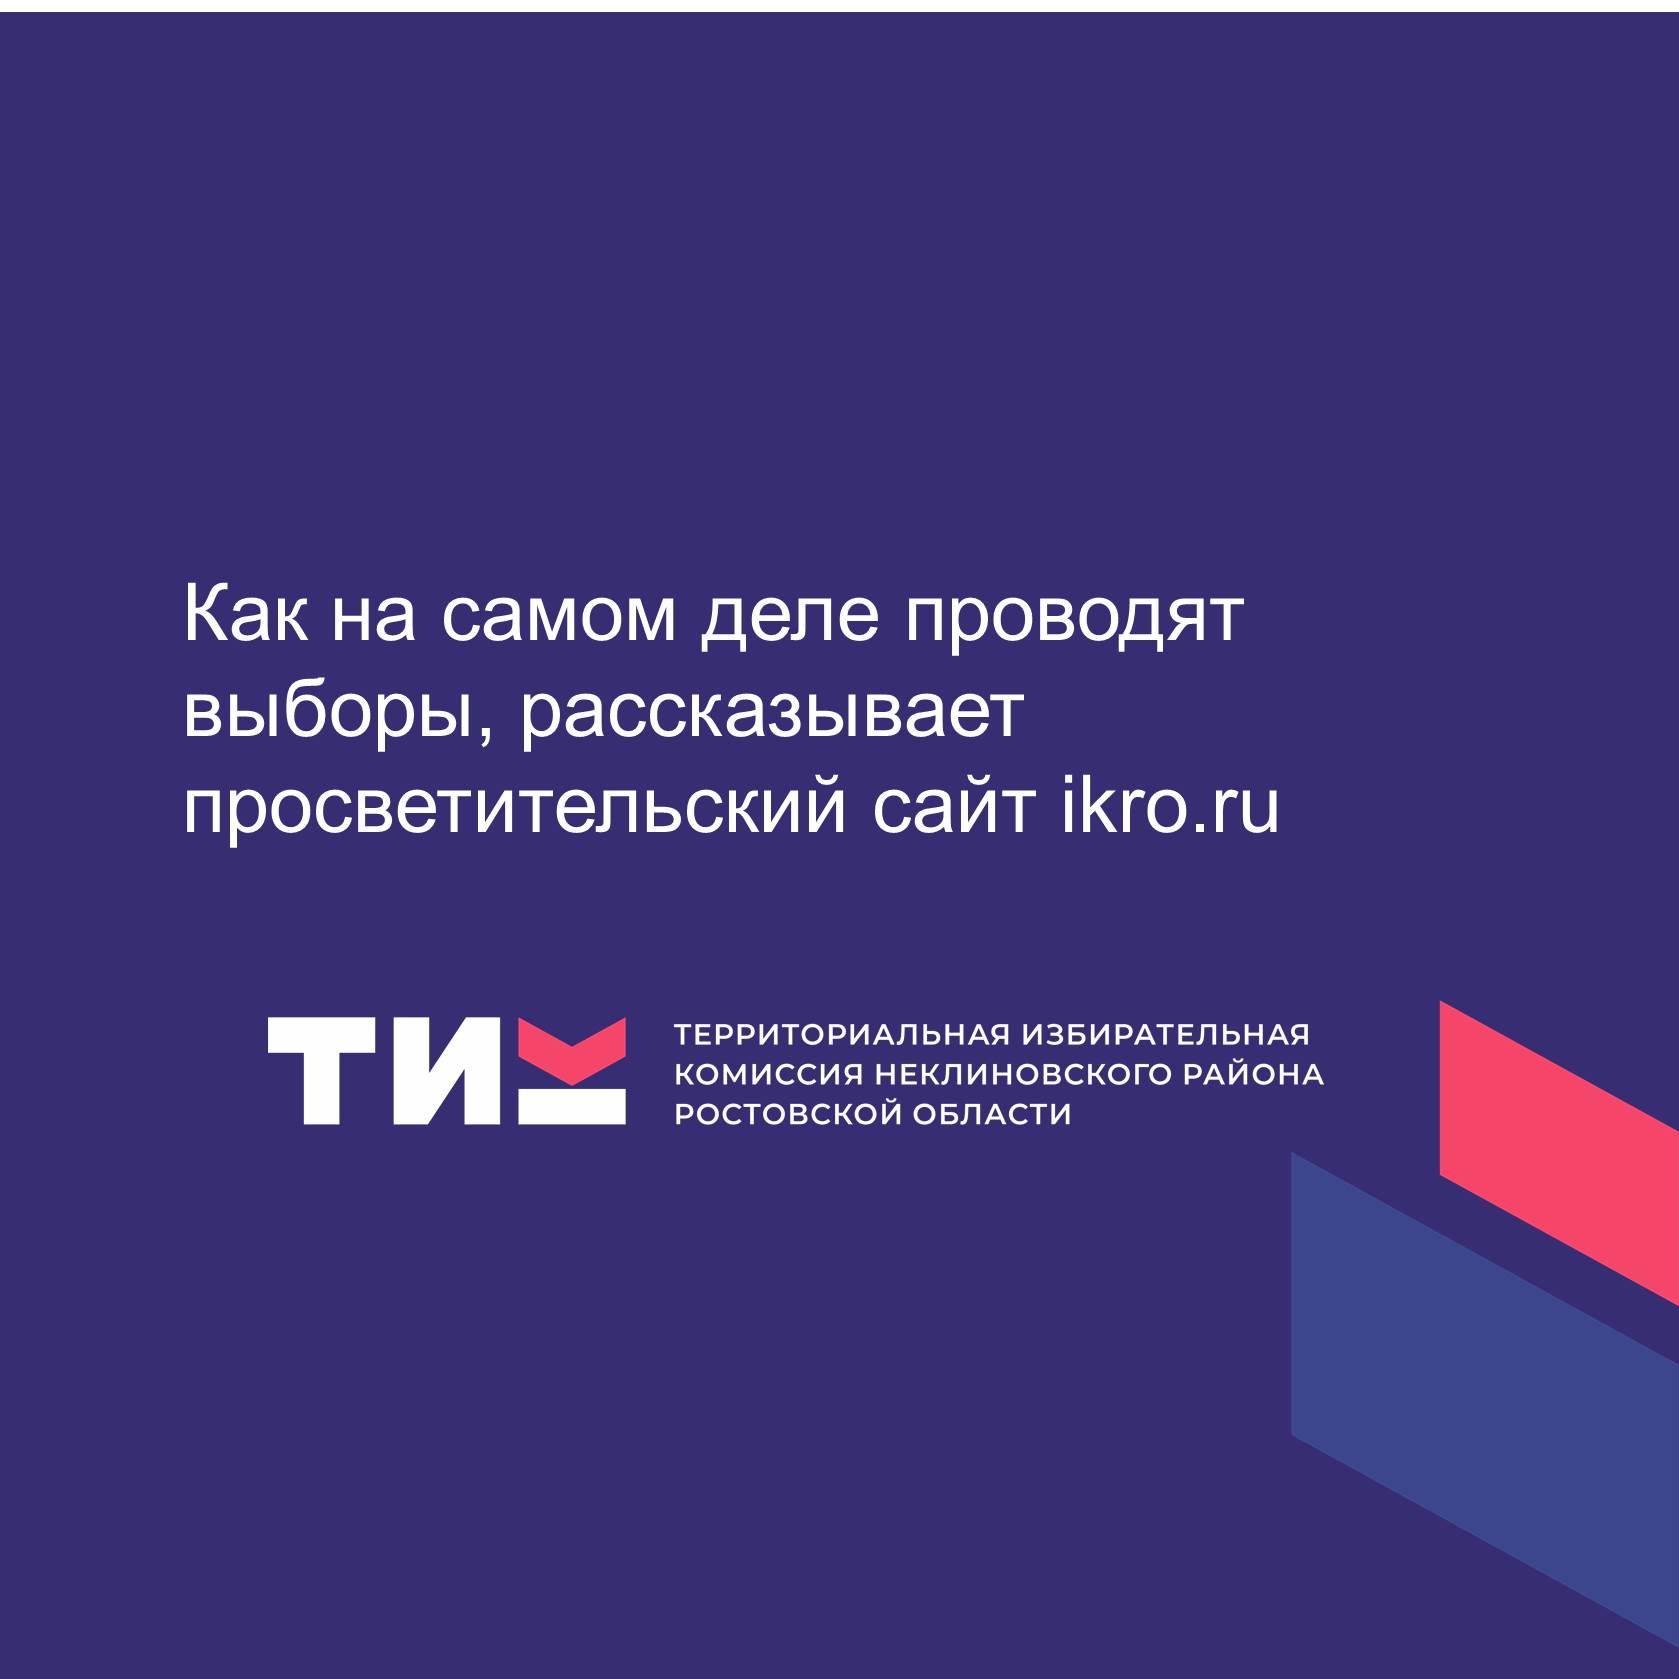 Как на самом деле проводят выборы, рассказывает просветительский сайт ikro.ru